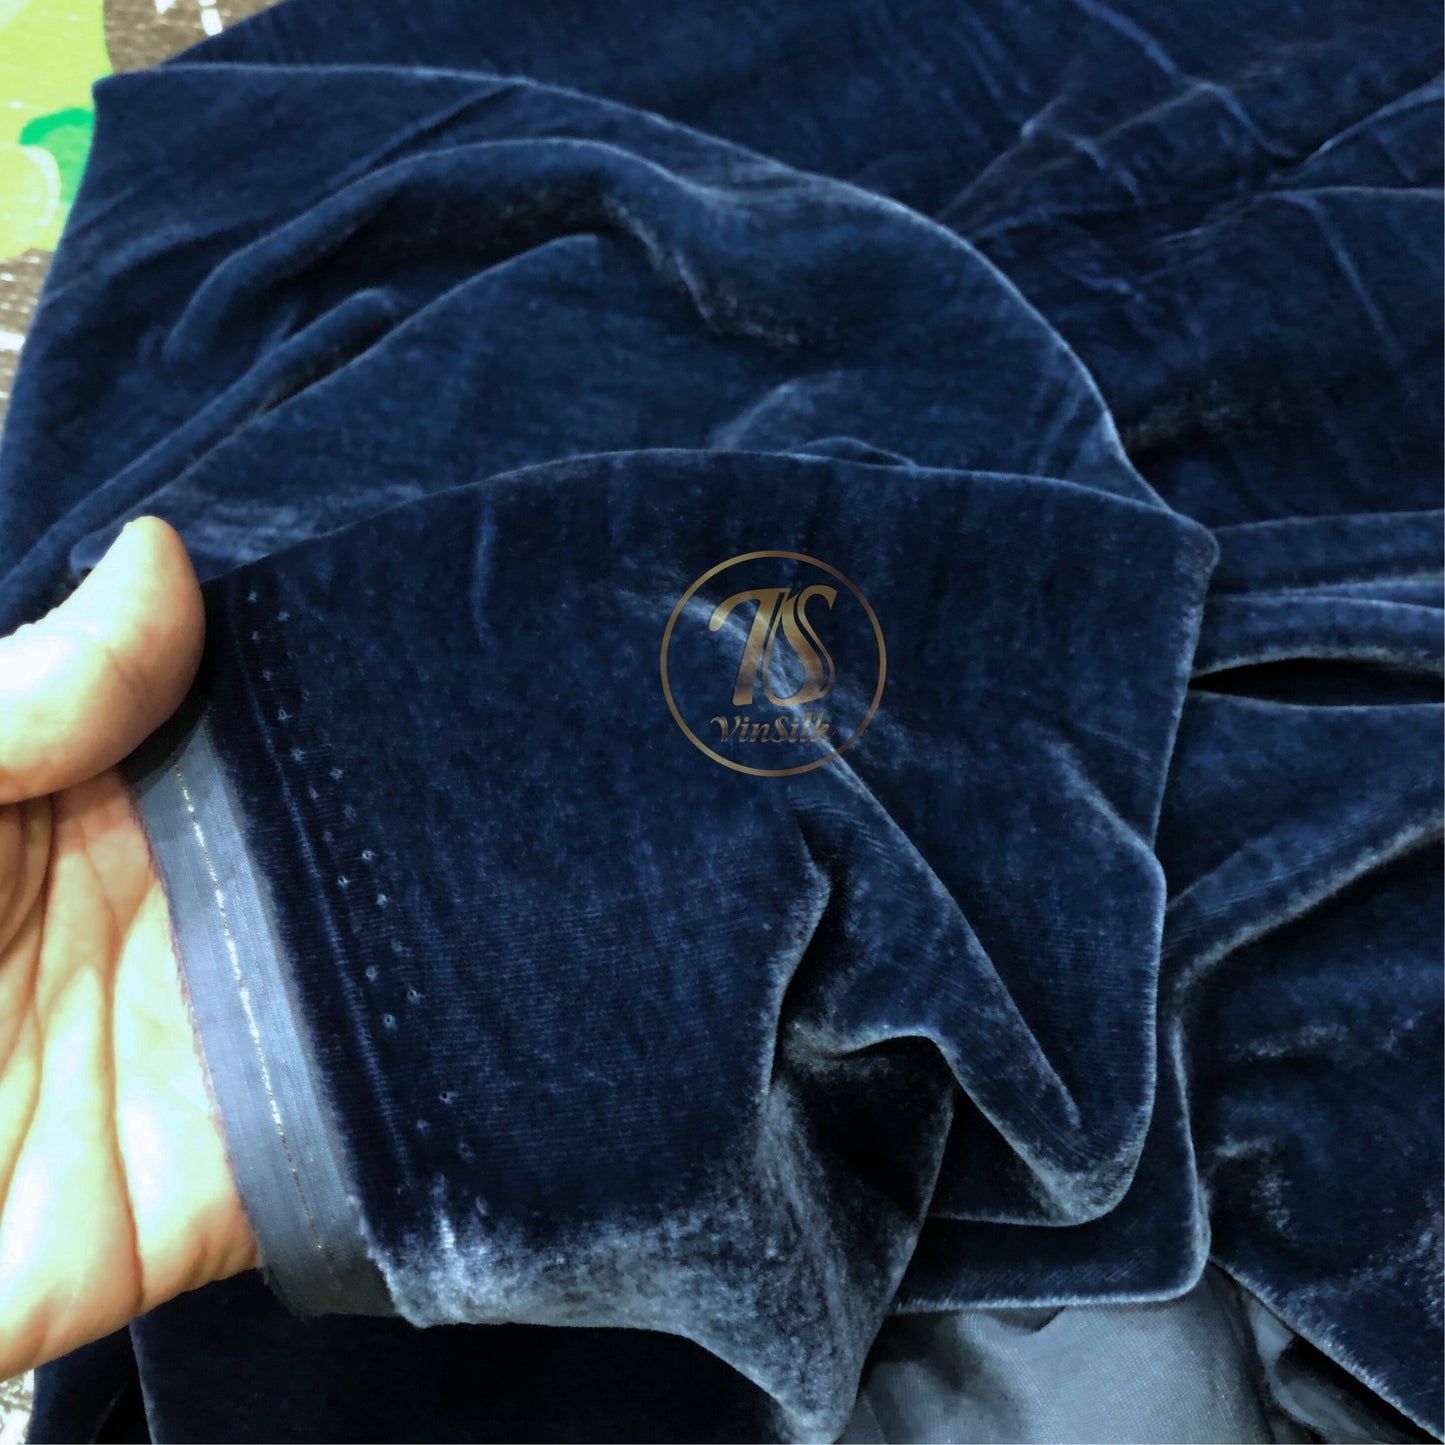 100% Pure Mulberry Silk Velvet Fabric - Luxury Silk Velvet - Silk for sewing - Blue Silk Velvet